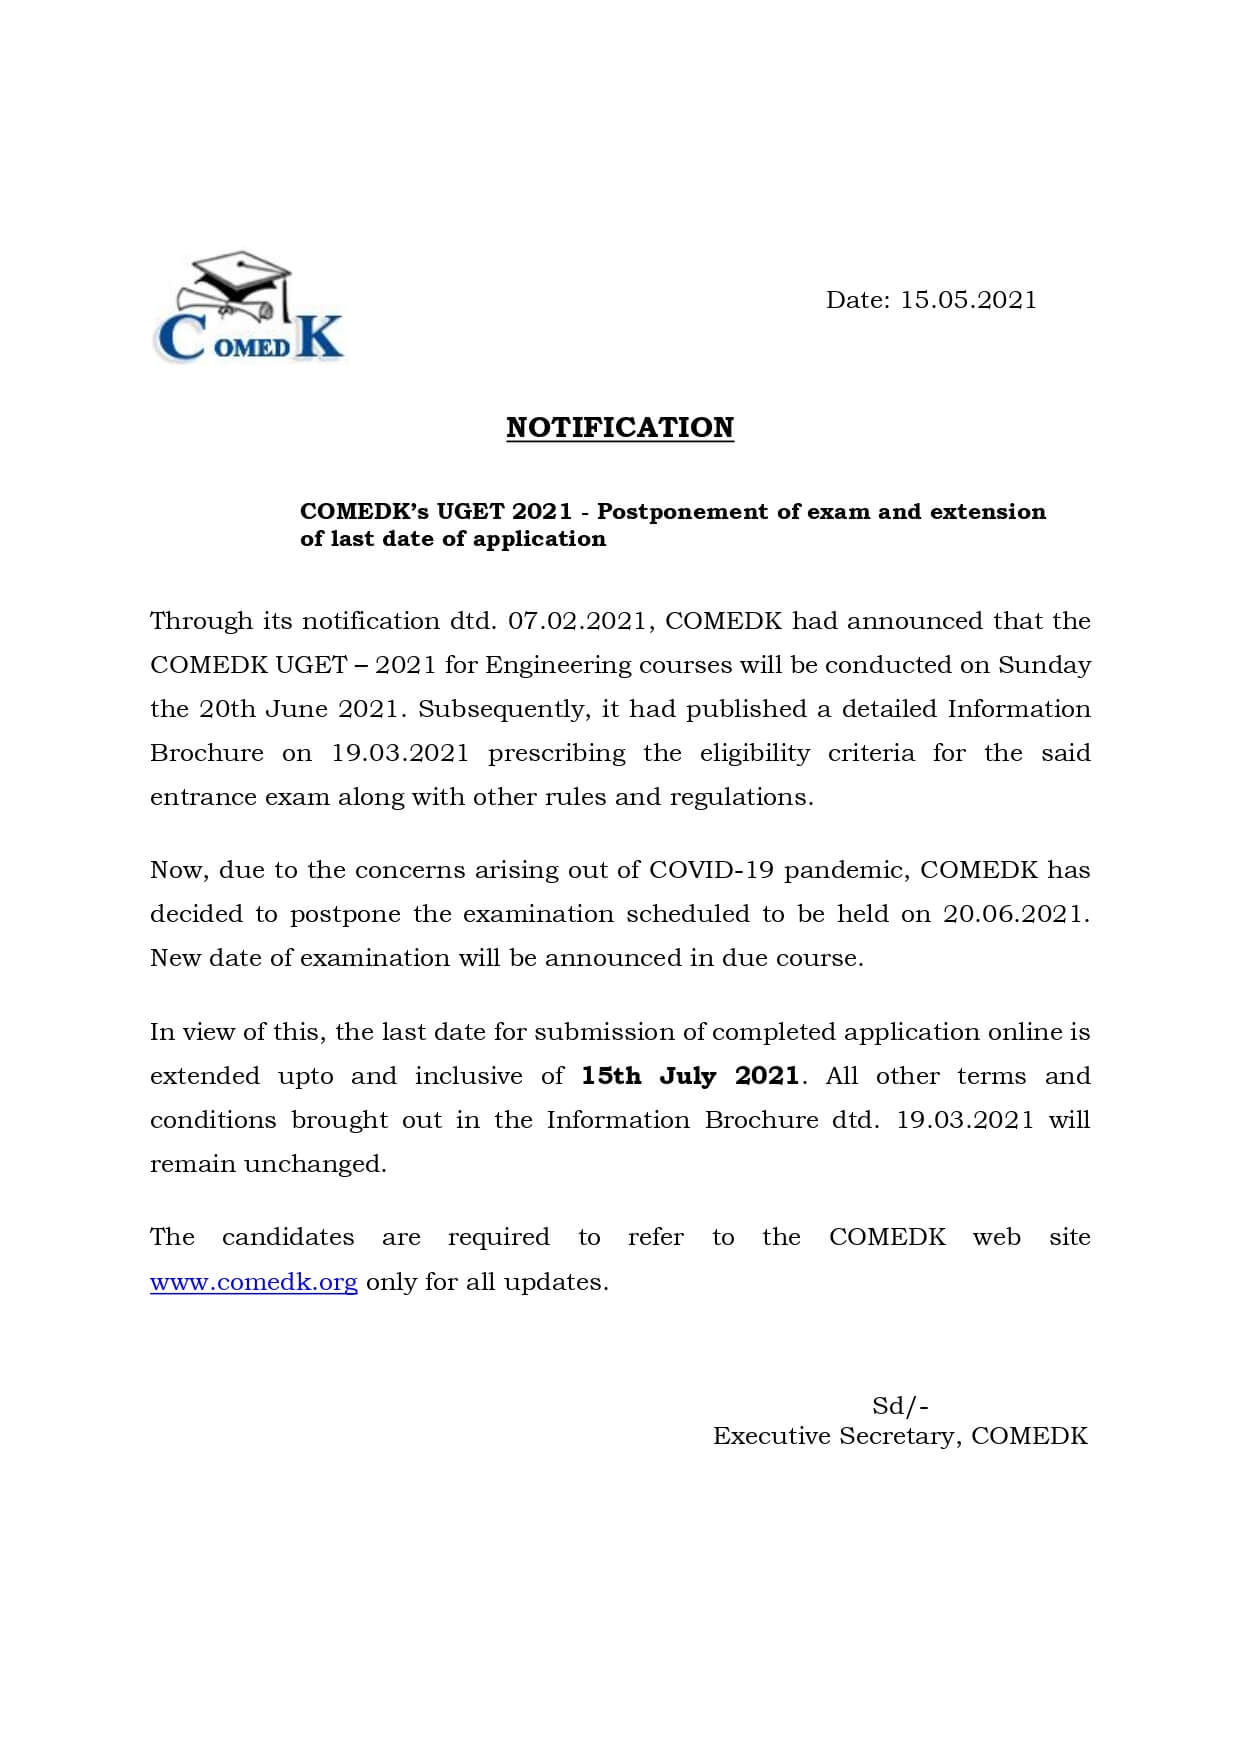 COMEDK UGET 2021 Exam Postponed Notice